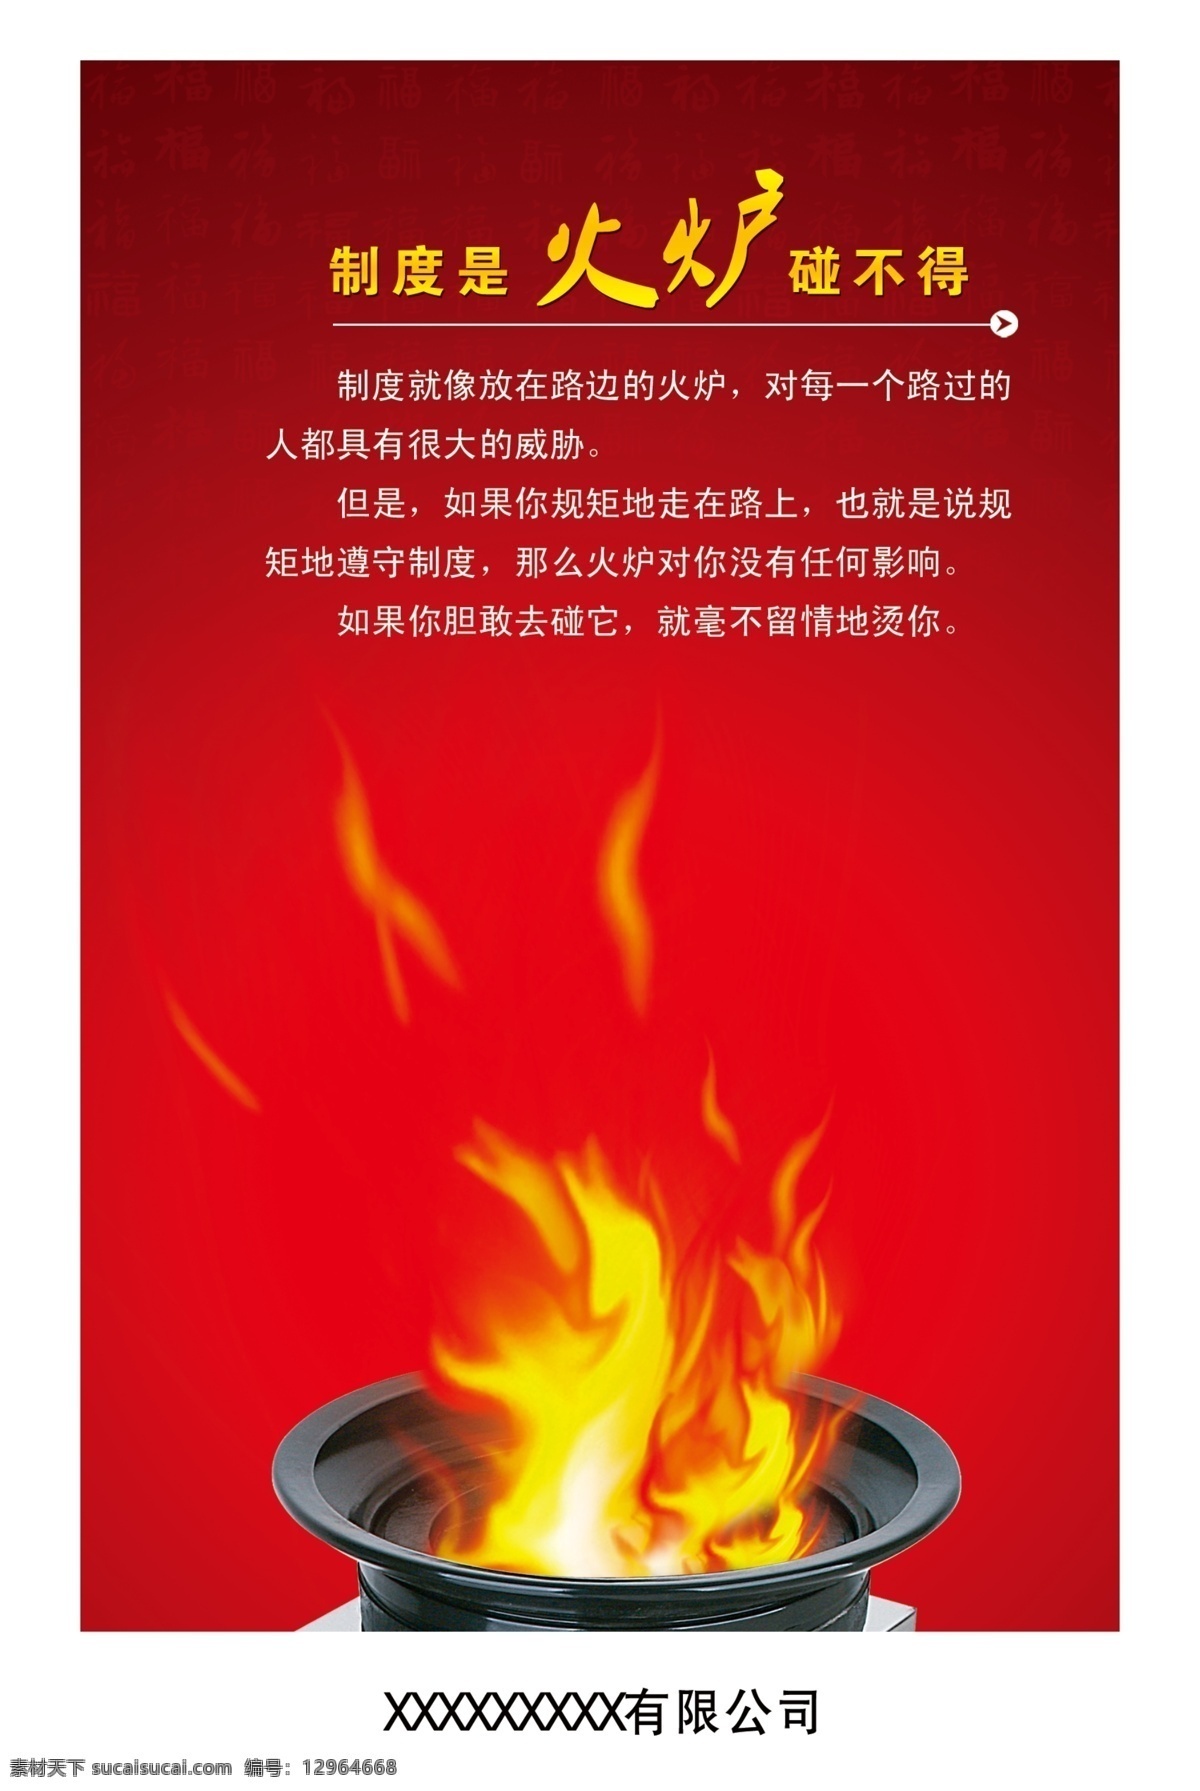 制度 火炉 碰 不得 广告设计模板 火 简介 企业 文化 源文件 企业文化海报